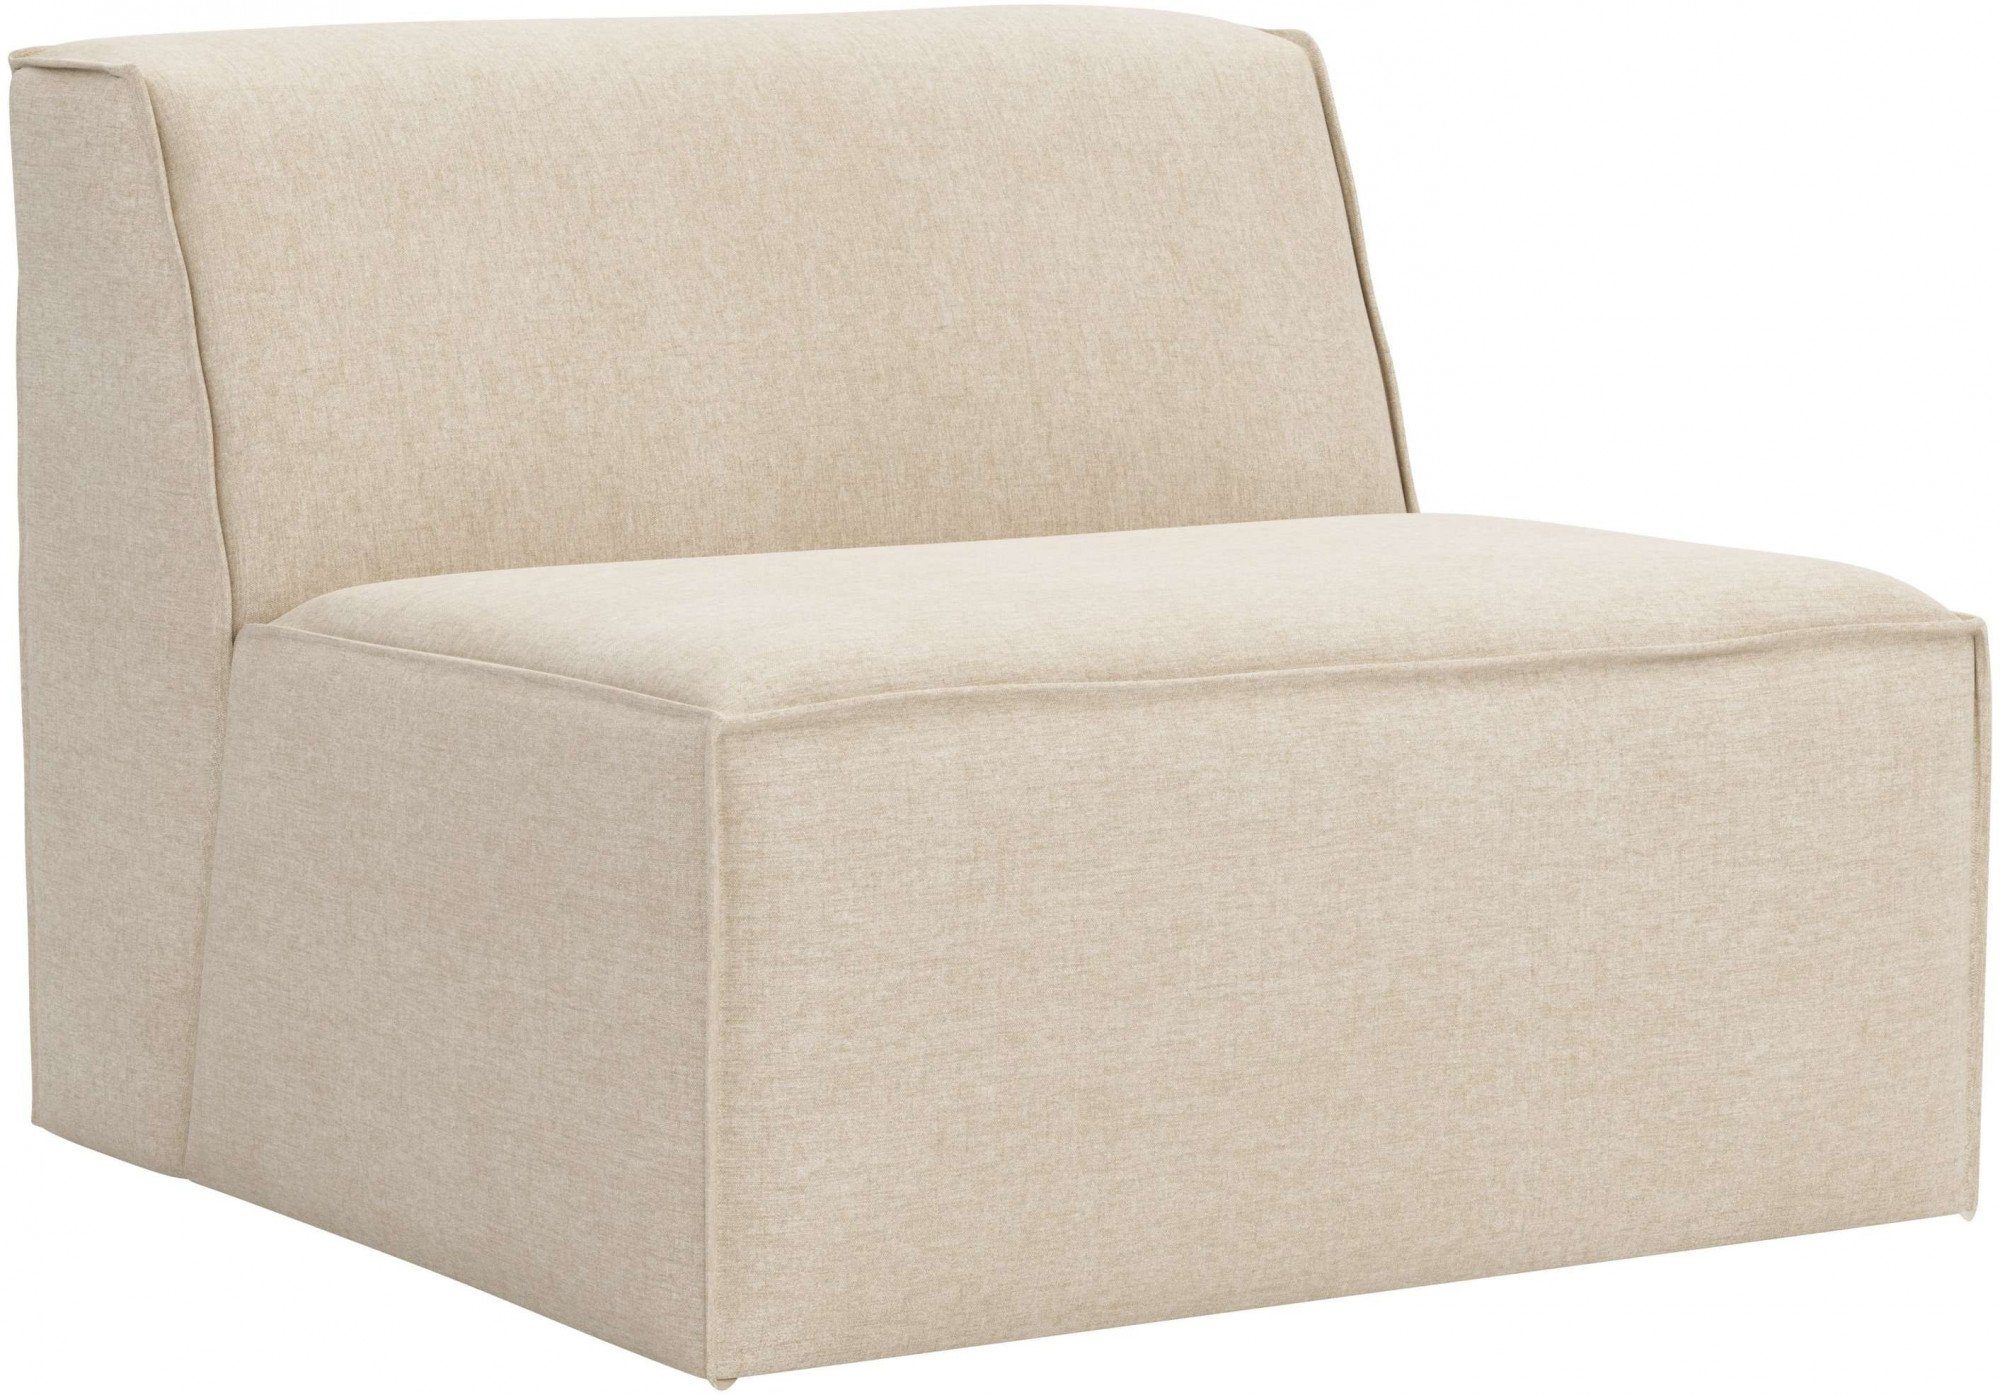 Sofa-Mittelelement große mit an Auswahl Modulen modular, RAUM.ID natural und Norvid, Komfortschaum, Polsterung